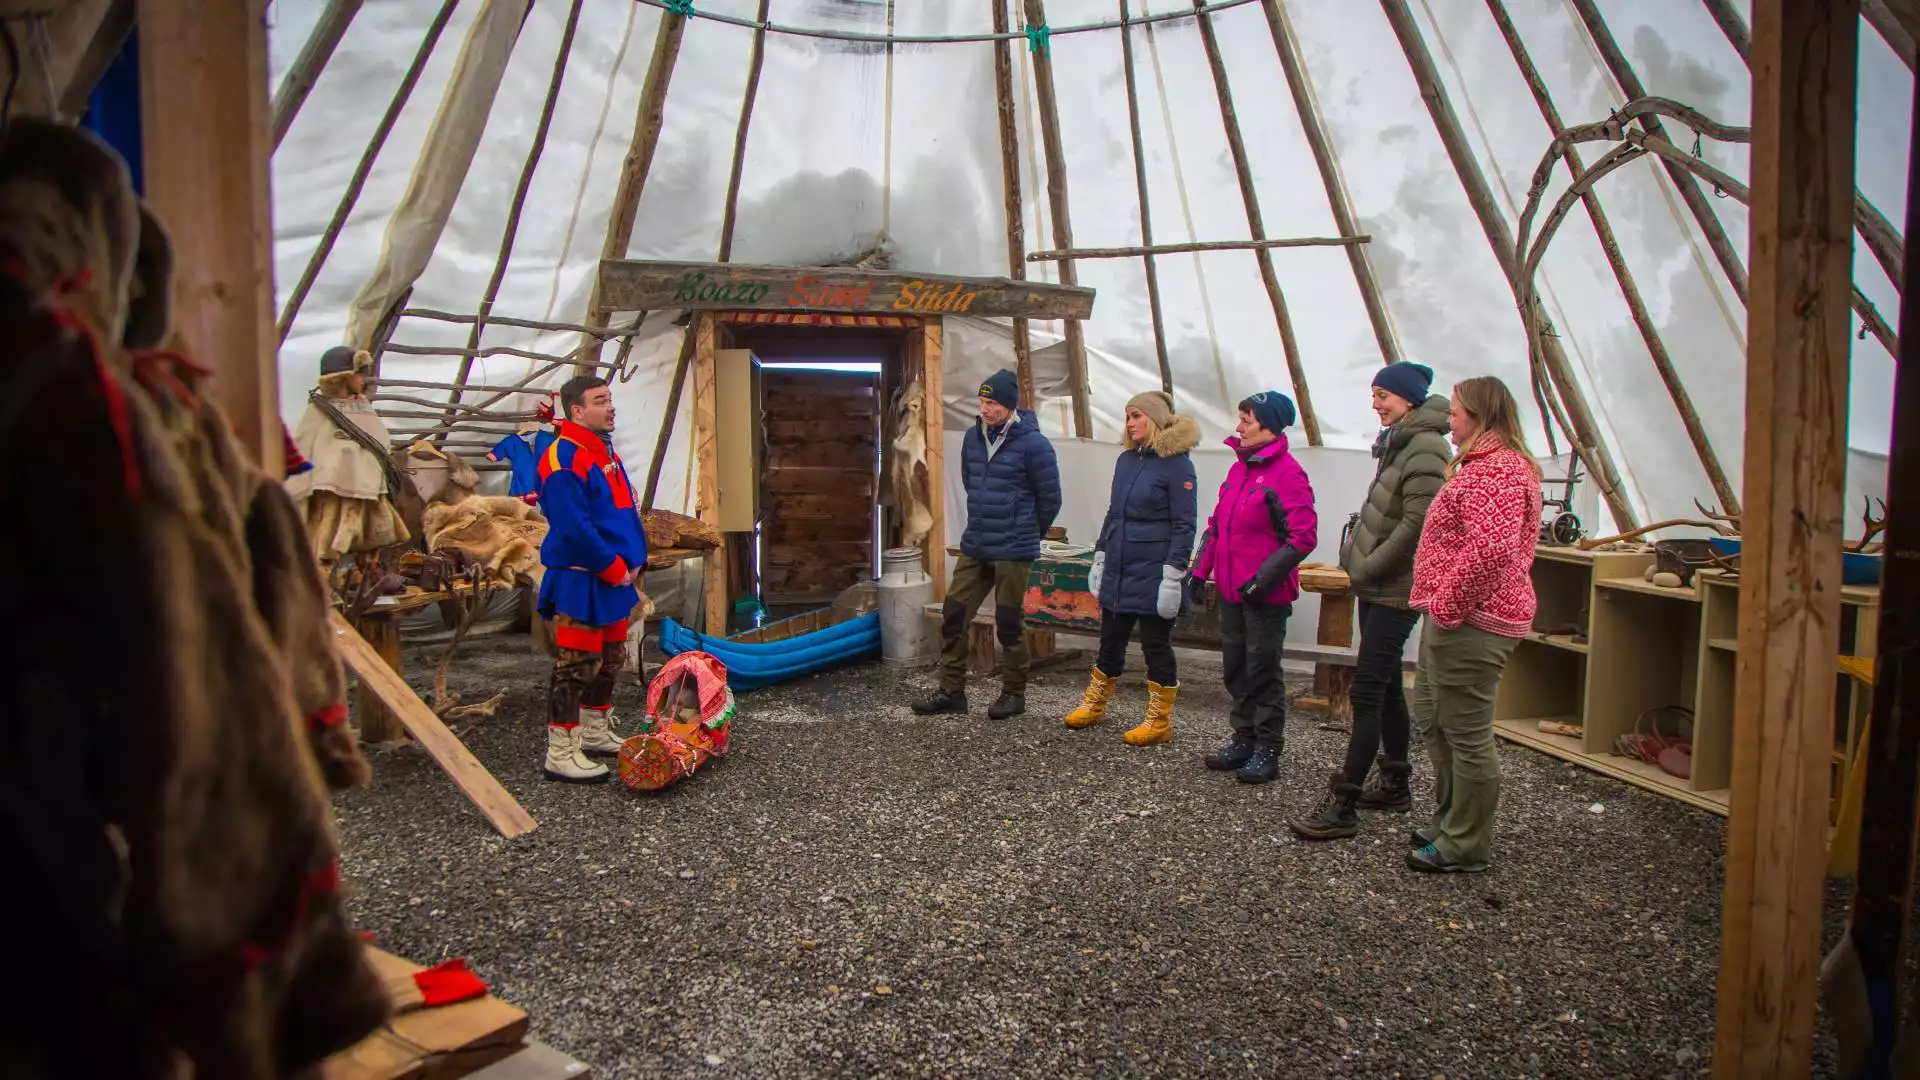 Leer meer over de Sami cultuur en ga op zoek naar het noorderlicht